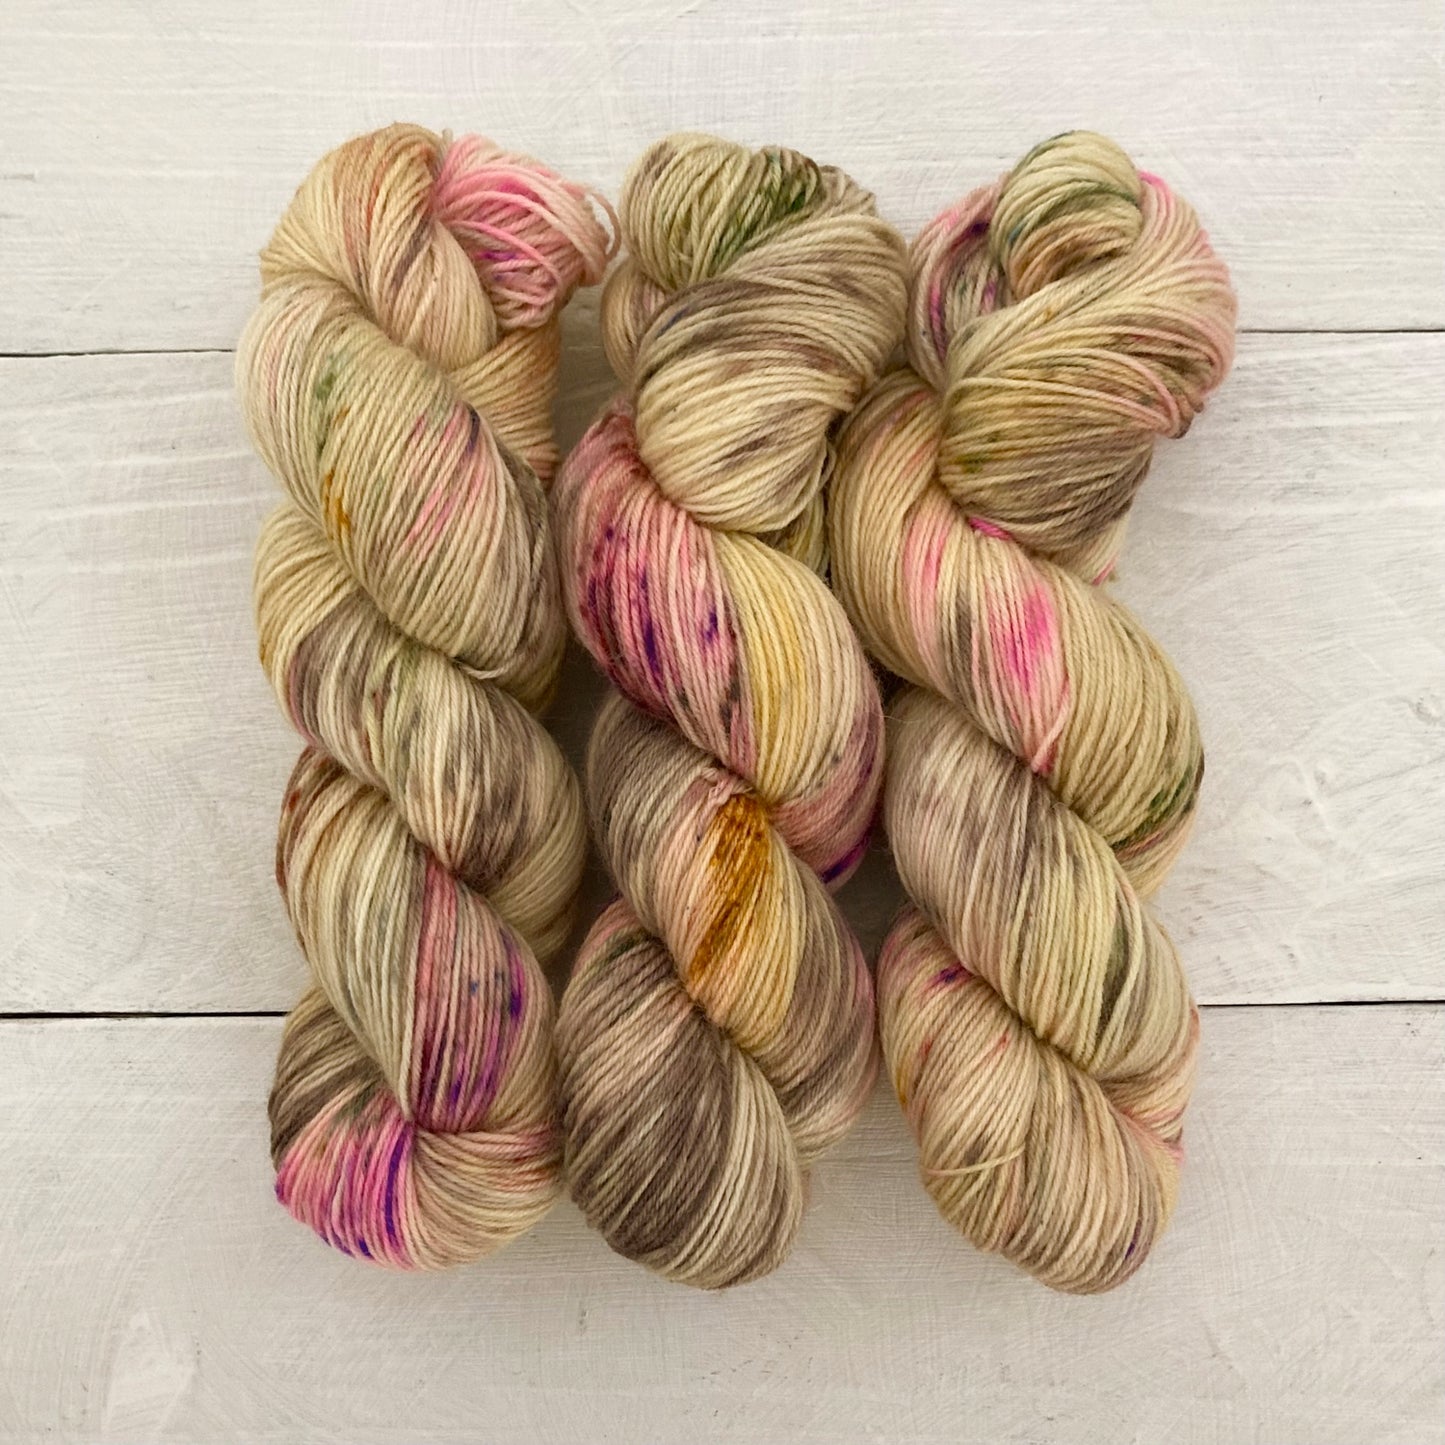 [Snow dyeing] Hand-dyed yarn No.208 sock yarn "Naturgenuß"